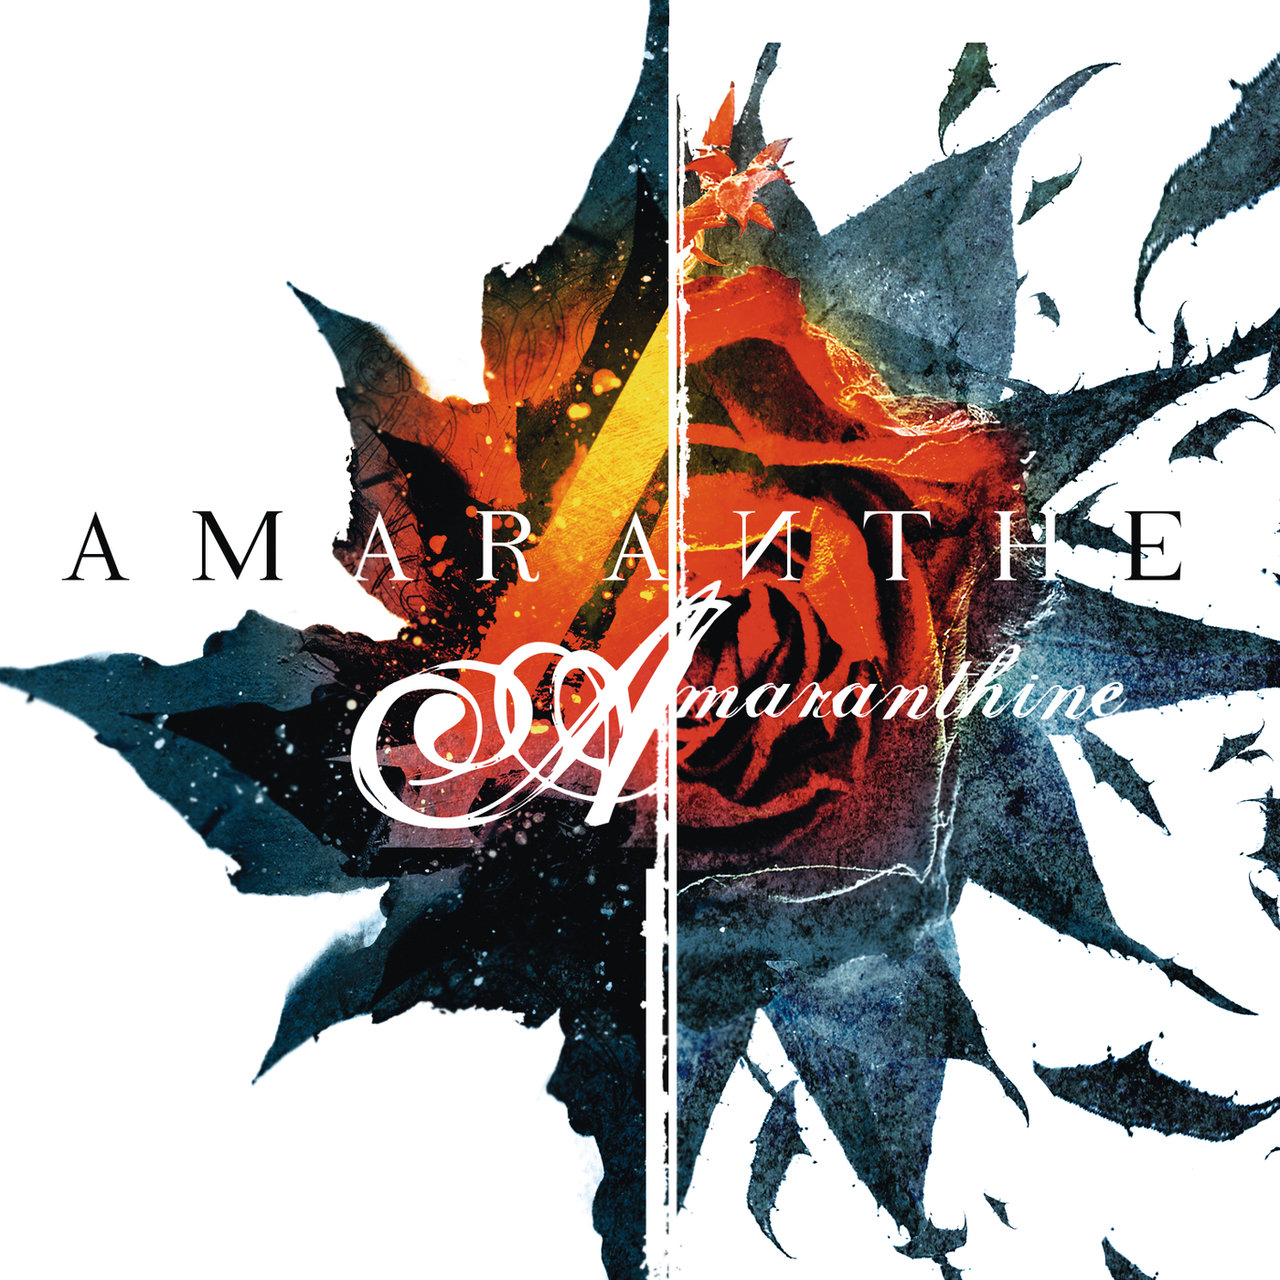 Amaranthe — Amaranthine cover artwork